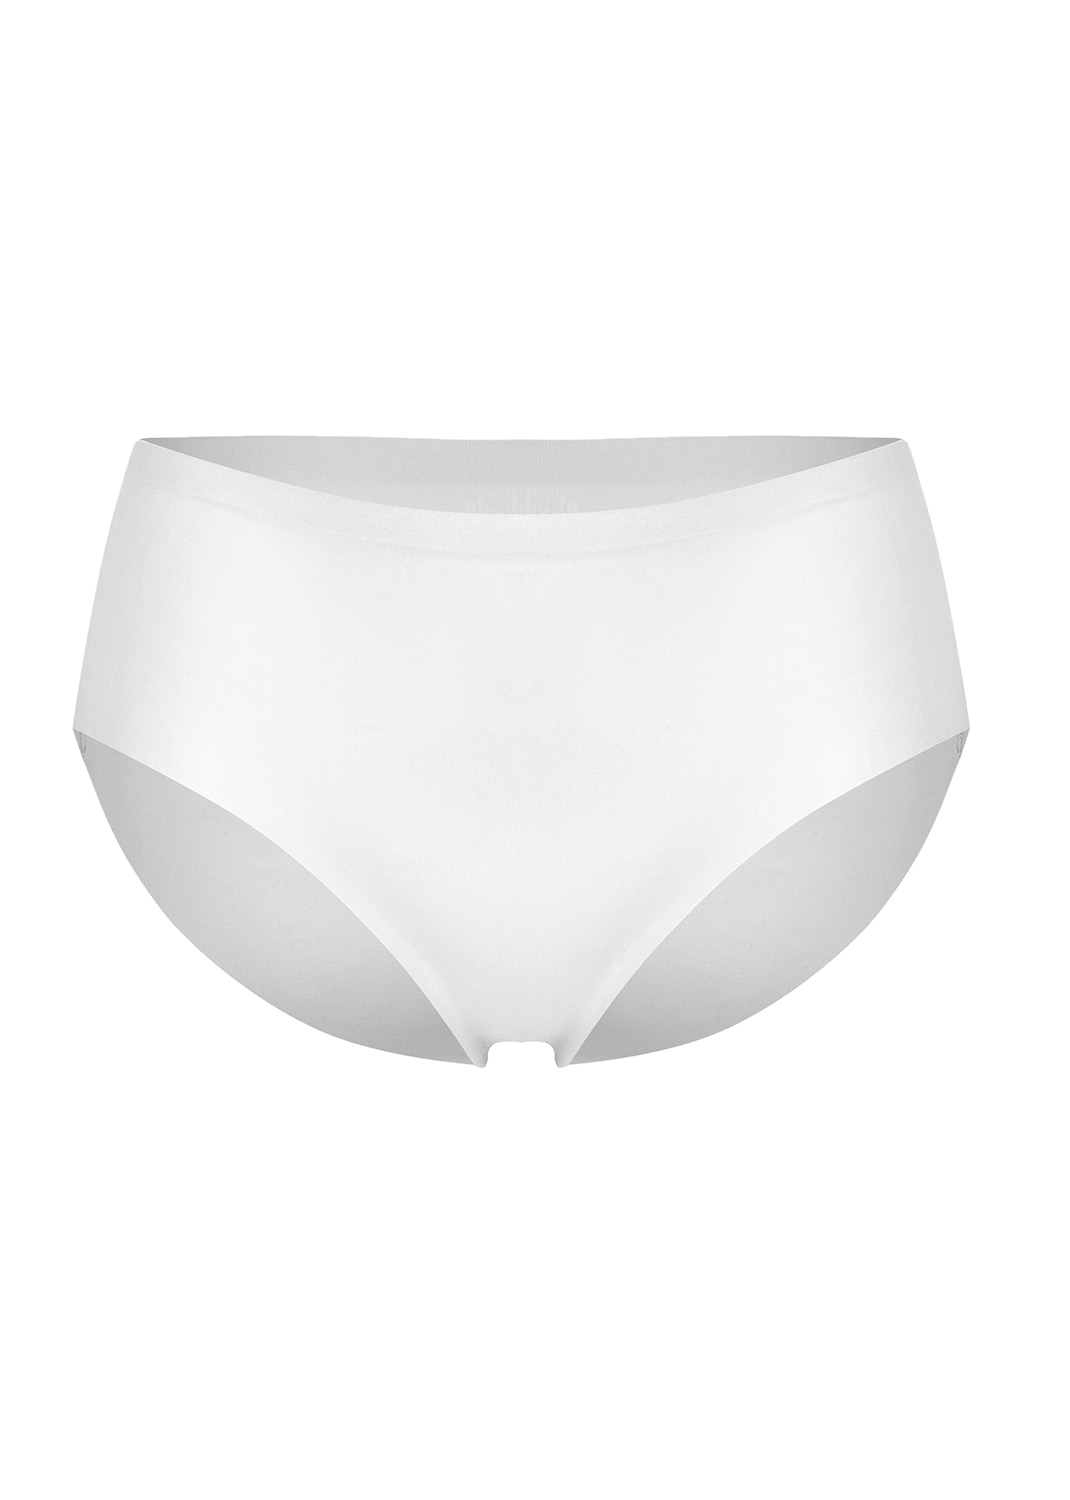 Gaia underwear